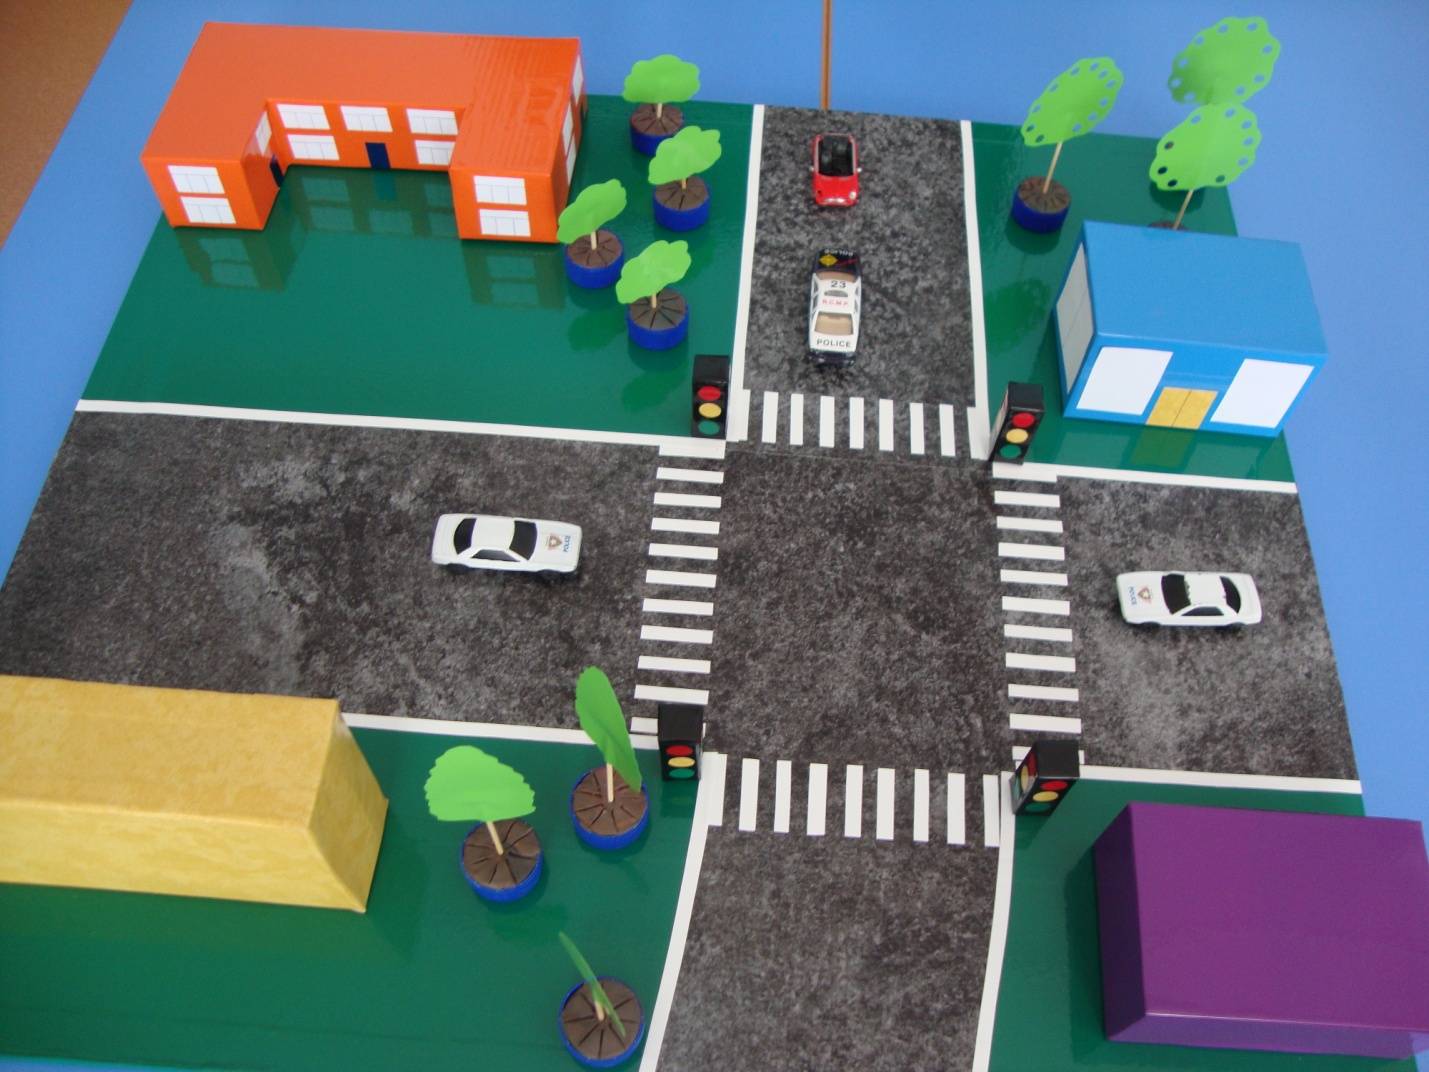 Мастер-класс «макет по правилам дорожного движения своими руками». воспитателям детских садов, школьным учителям и педагогам